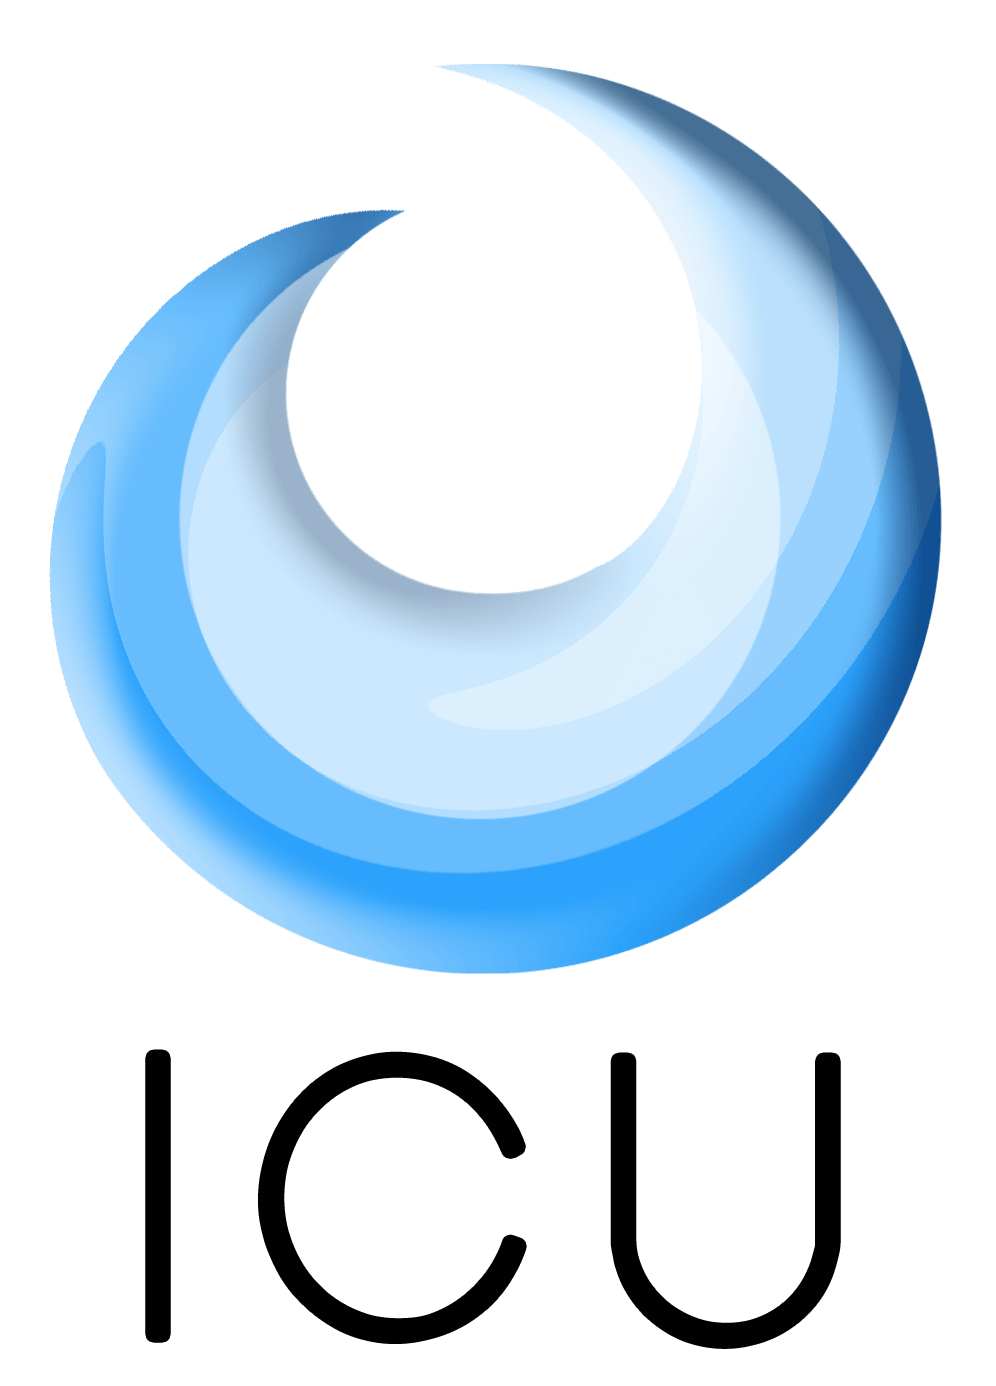 ICU Logo - ICU Logo